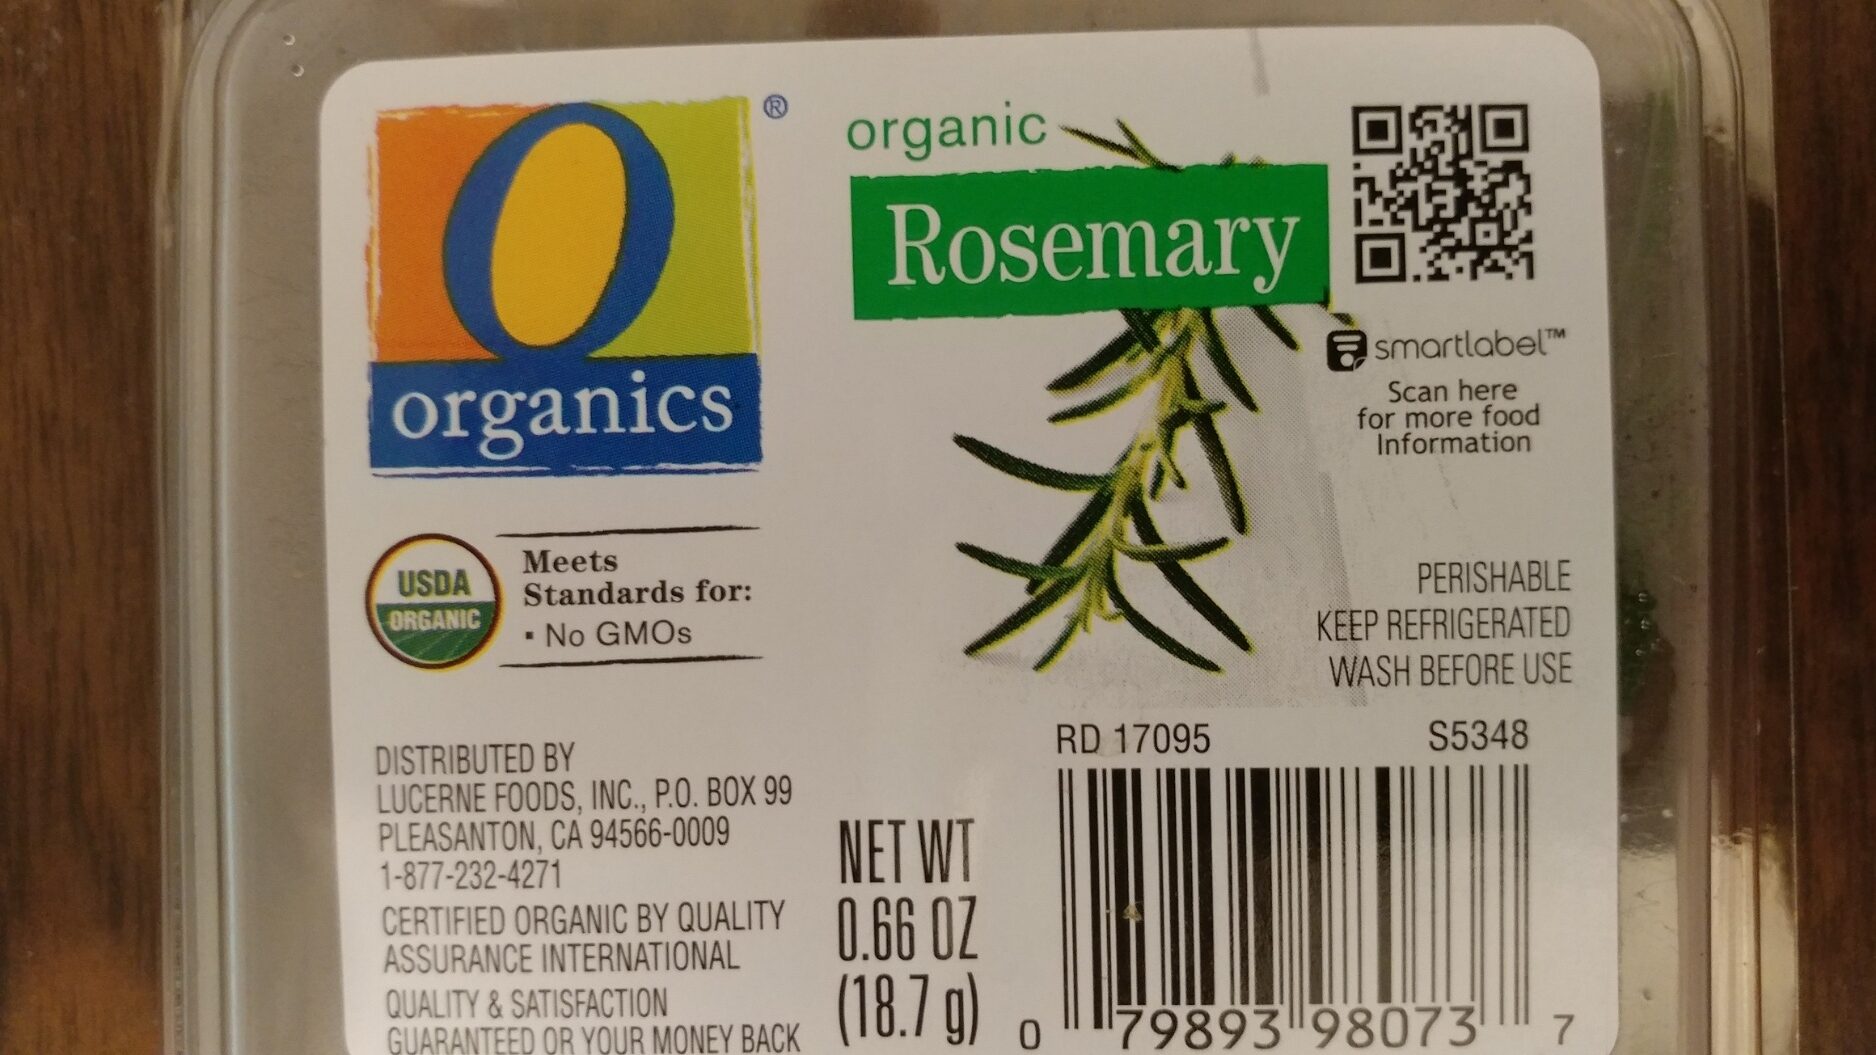 O Organics Organic Rosemary - Product - en